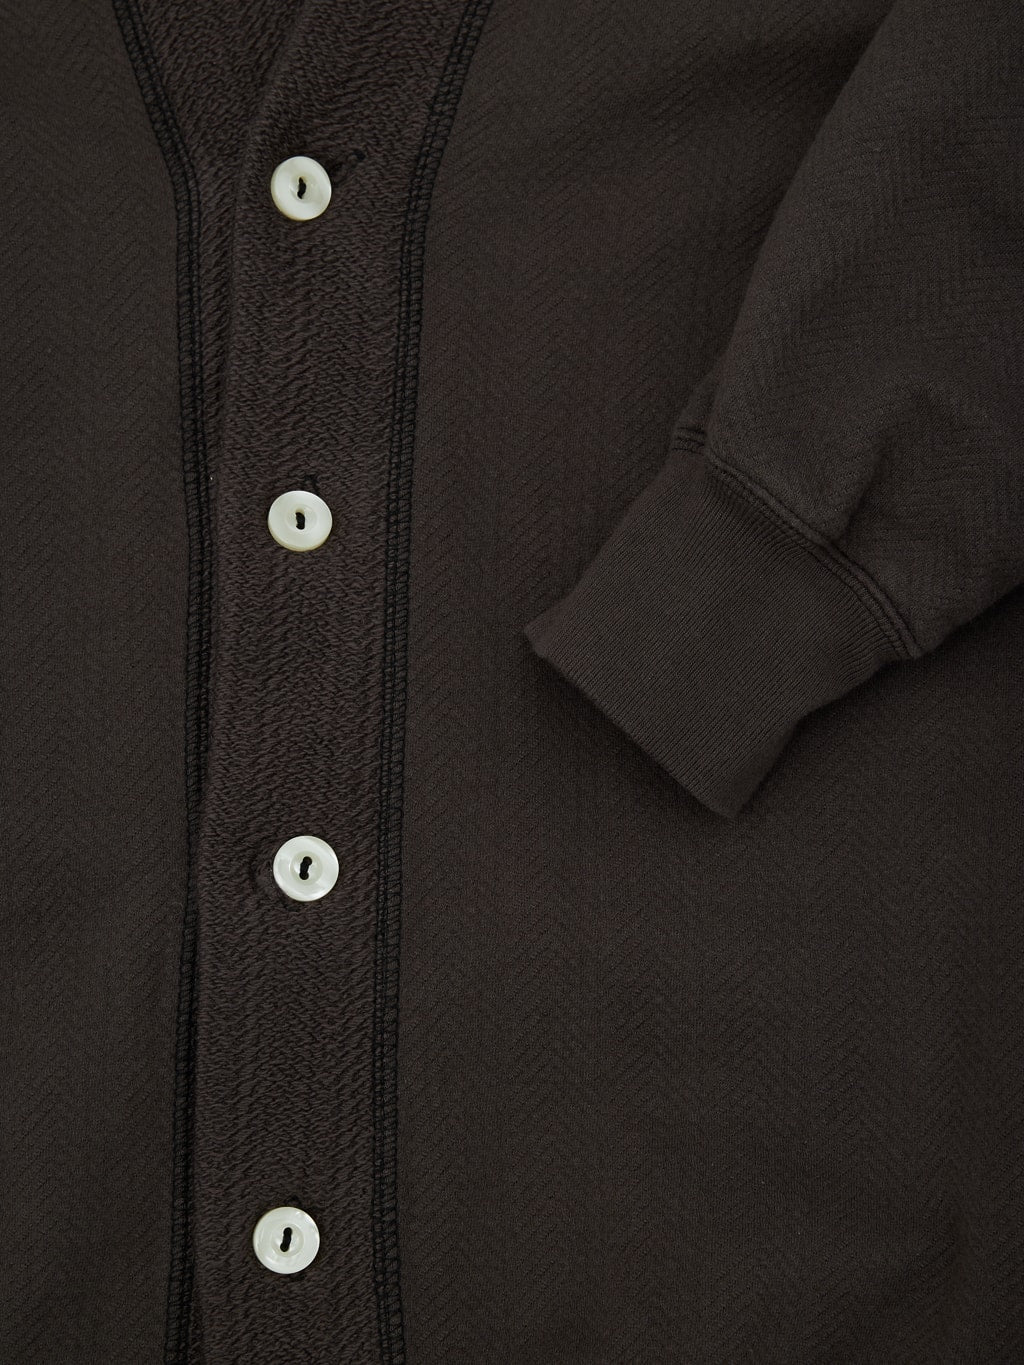 Loop Weft Herringbone Pile Shawl Collar Cardigan Antique Black cuff